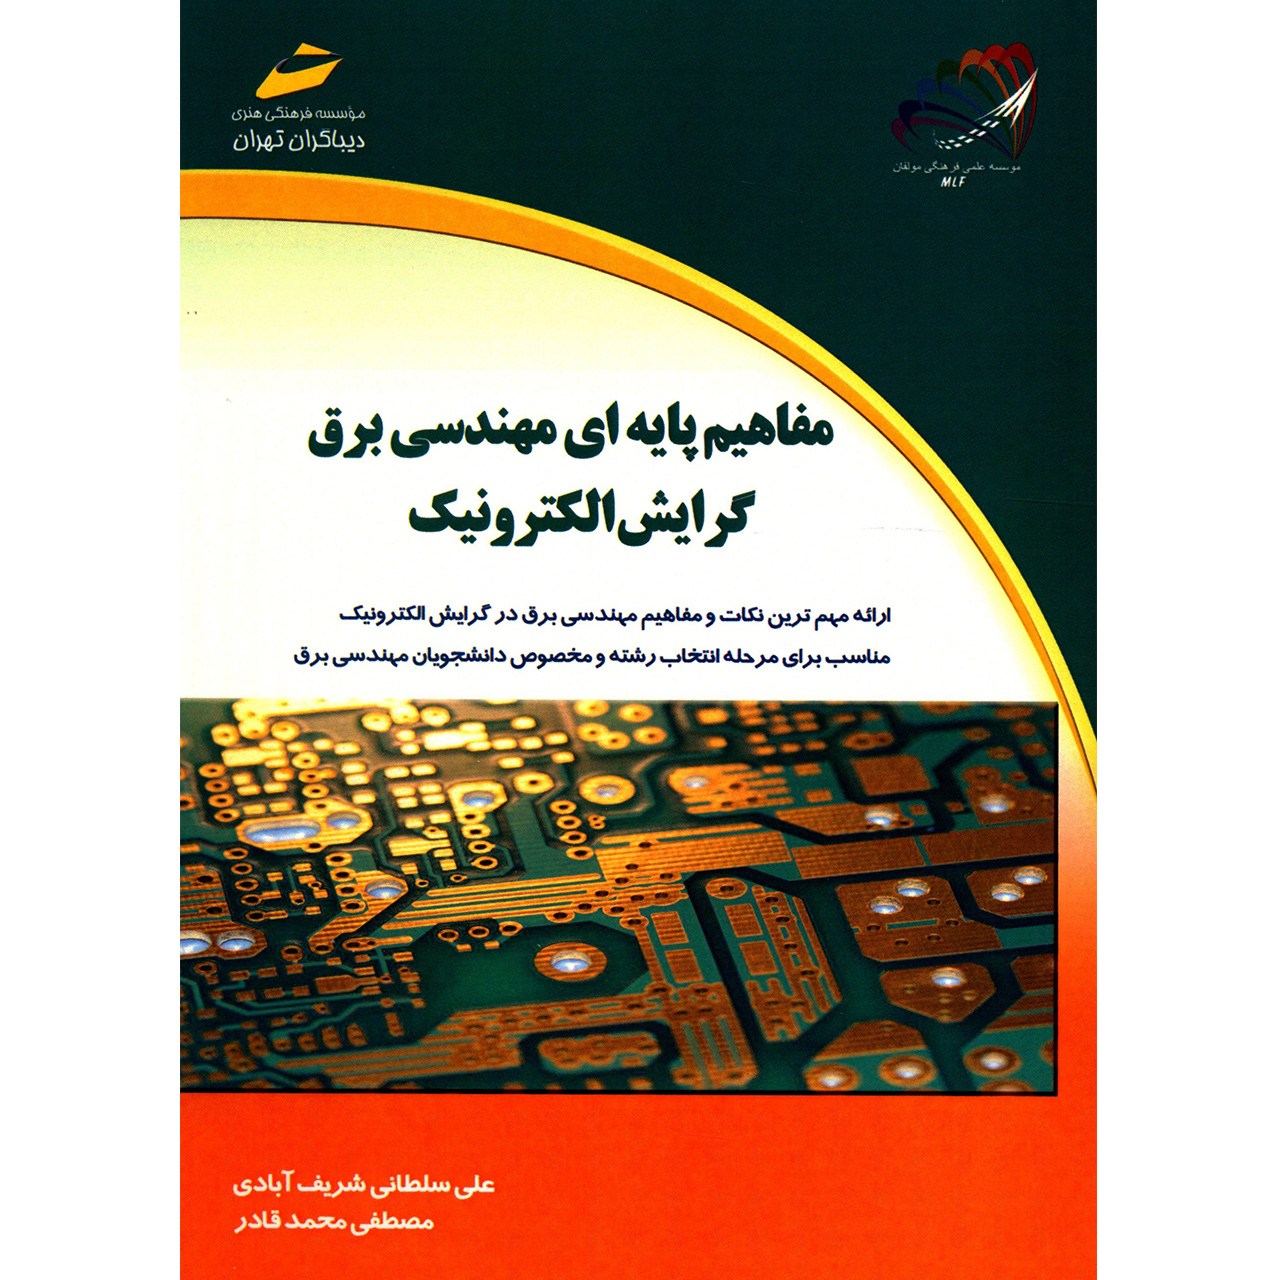 کتاب مفاهیم پایه ای مهندسی برق گرایش الکترونیک اثر علی سلطانی شریف آبادی